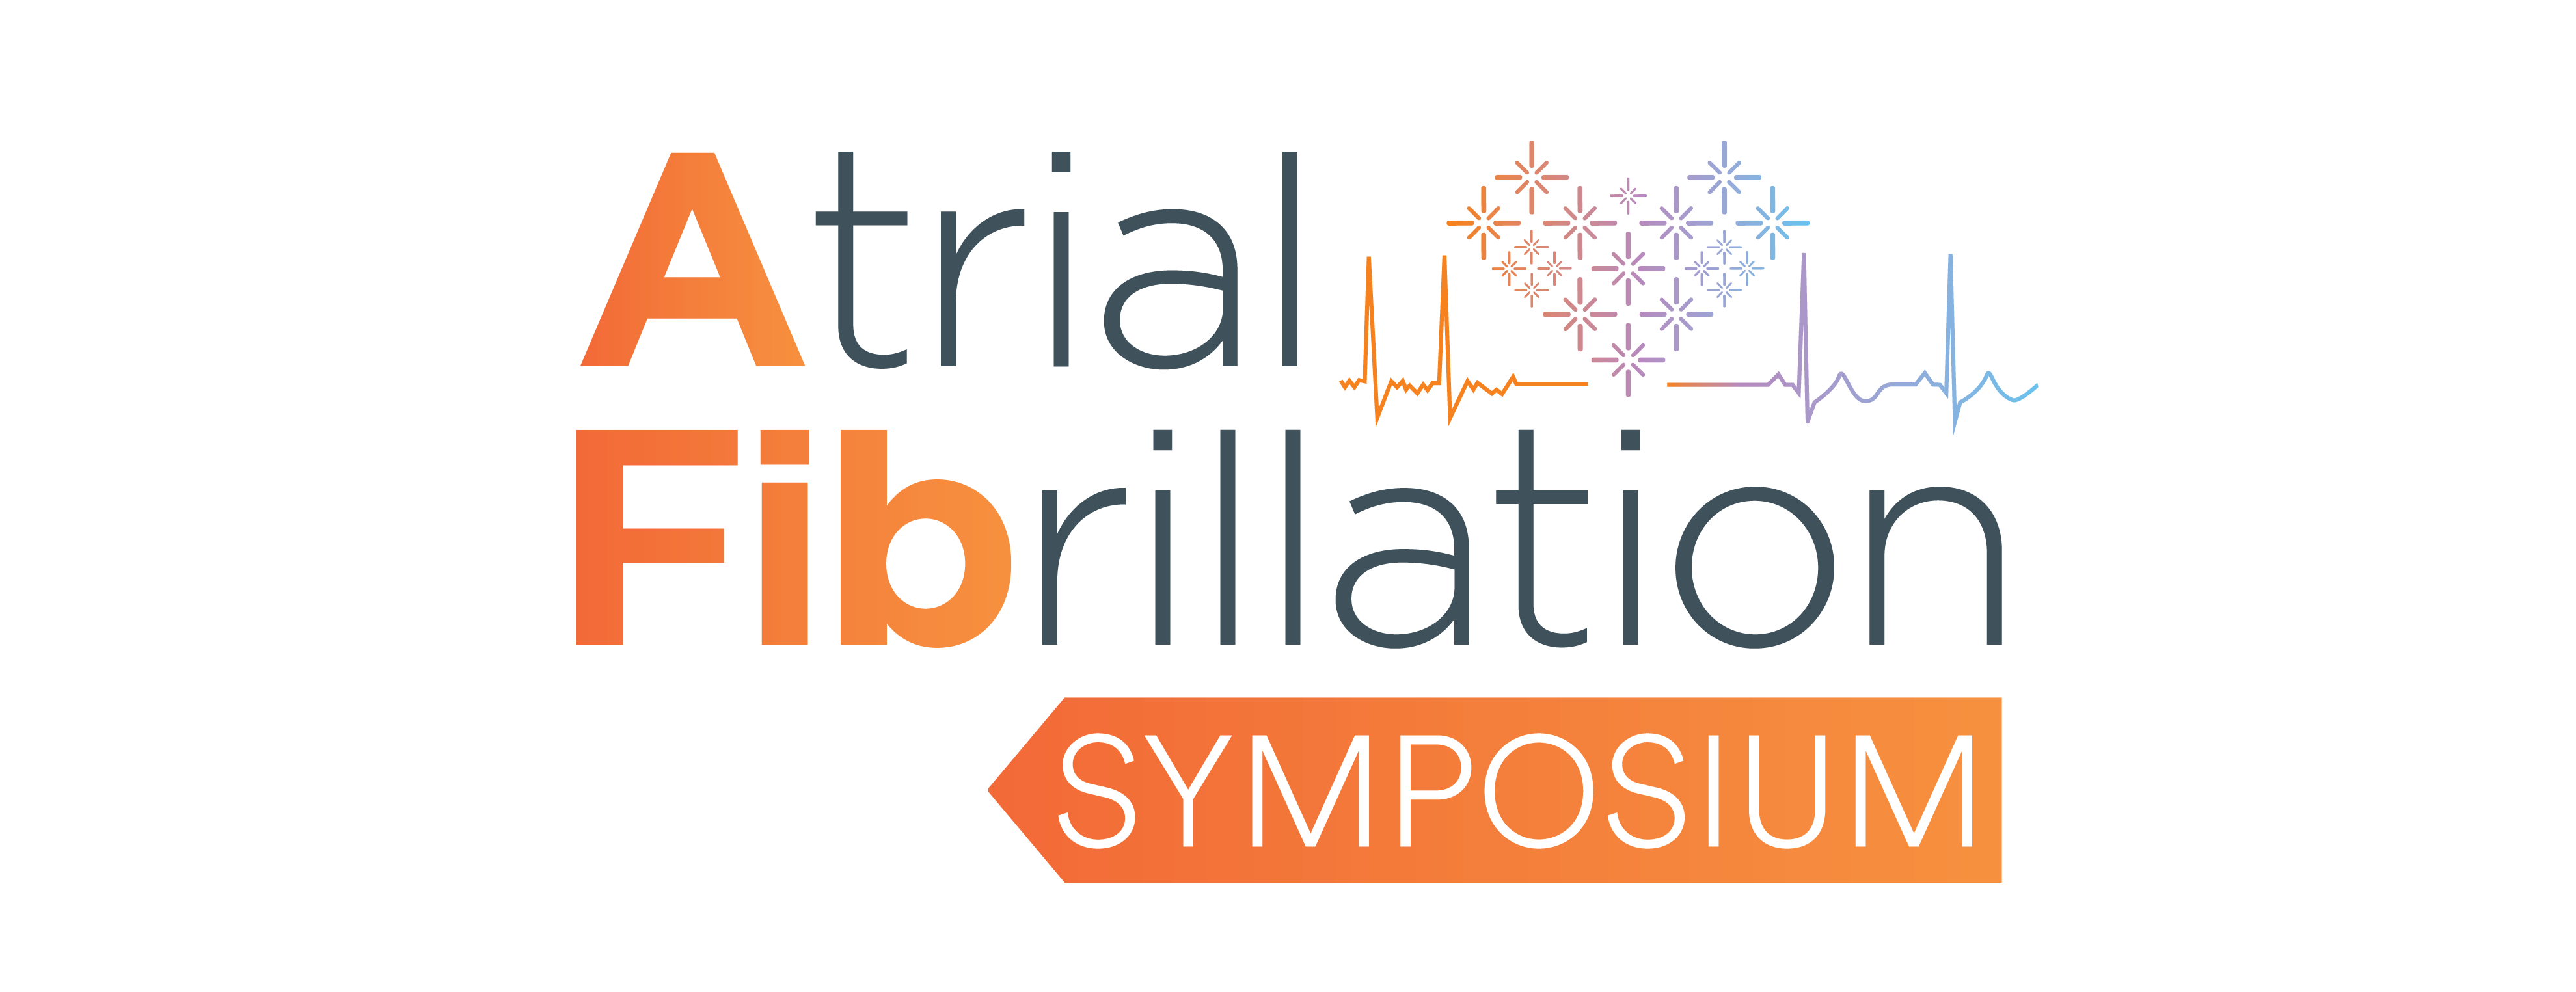 Atrial Fibrillation (AFib) Symposium